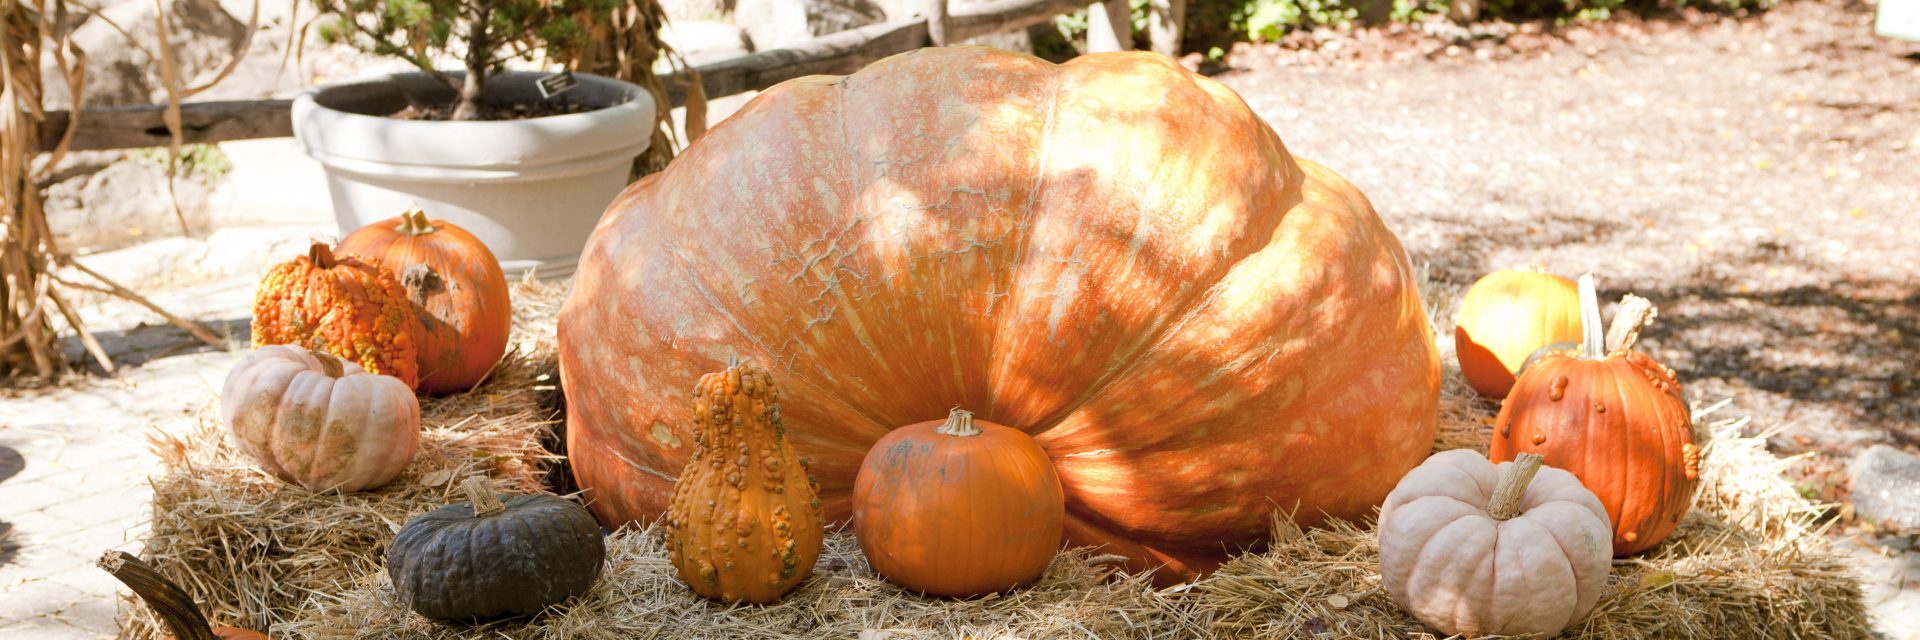 one giant pumpkin a small pumpkin and a gourd